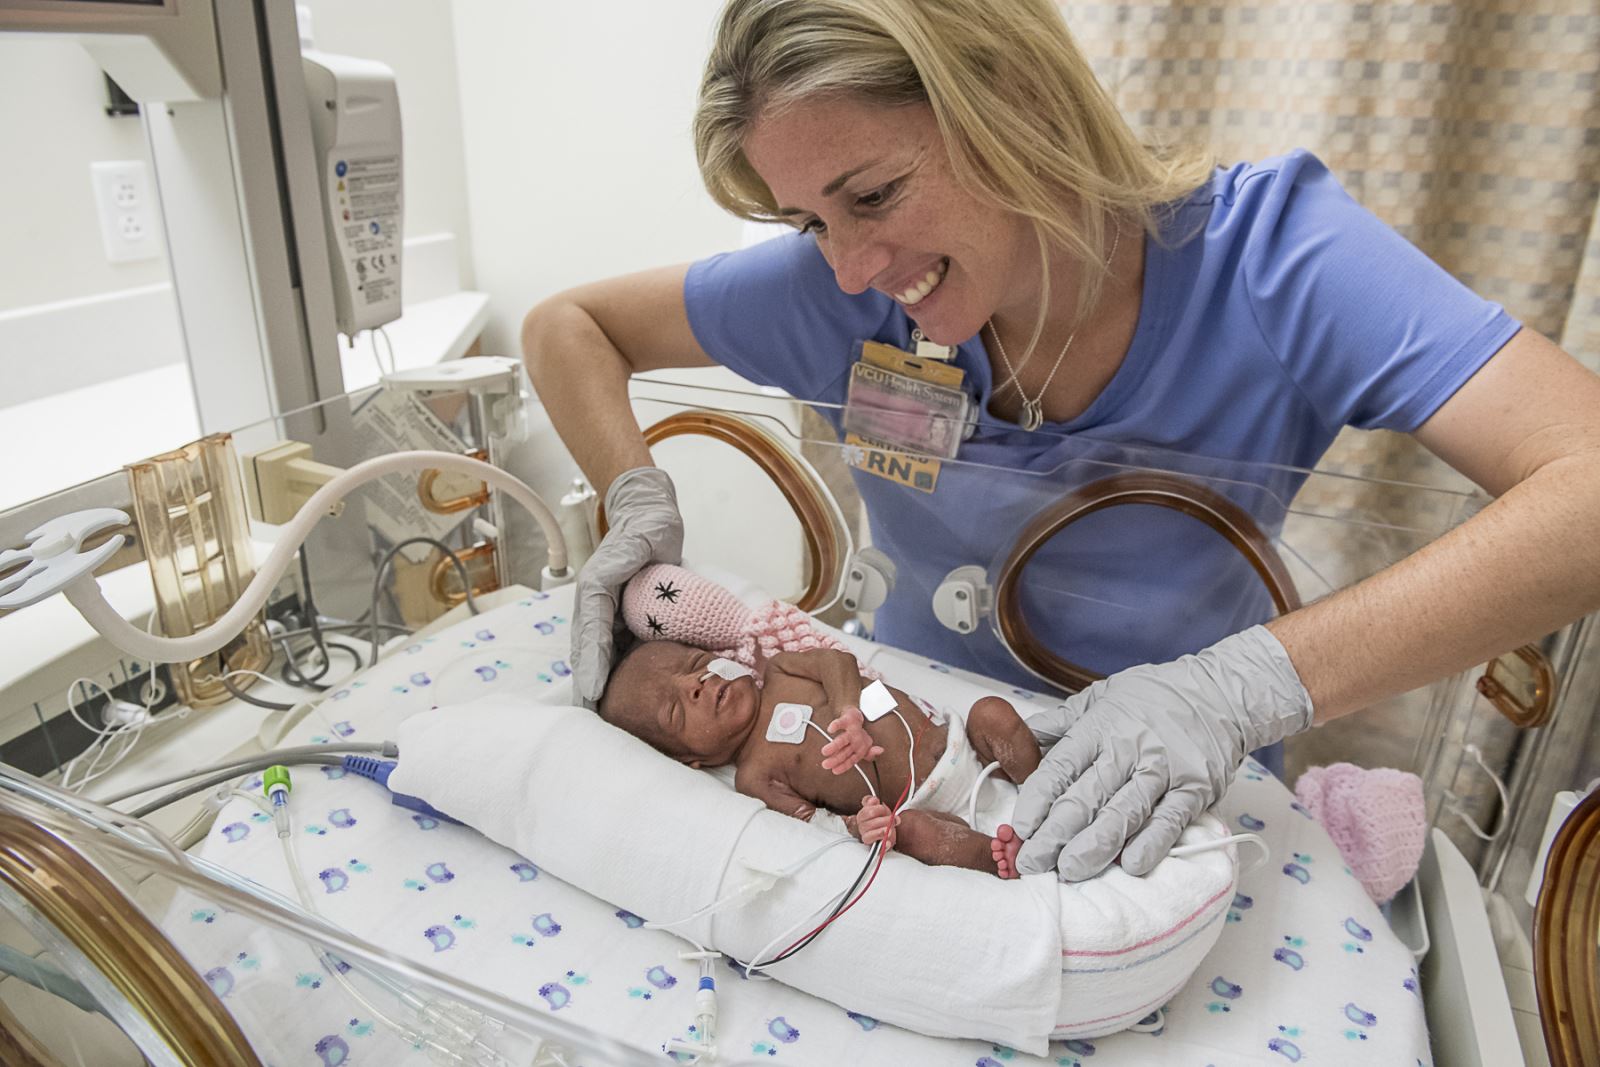 A nurse cares for a premature baby